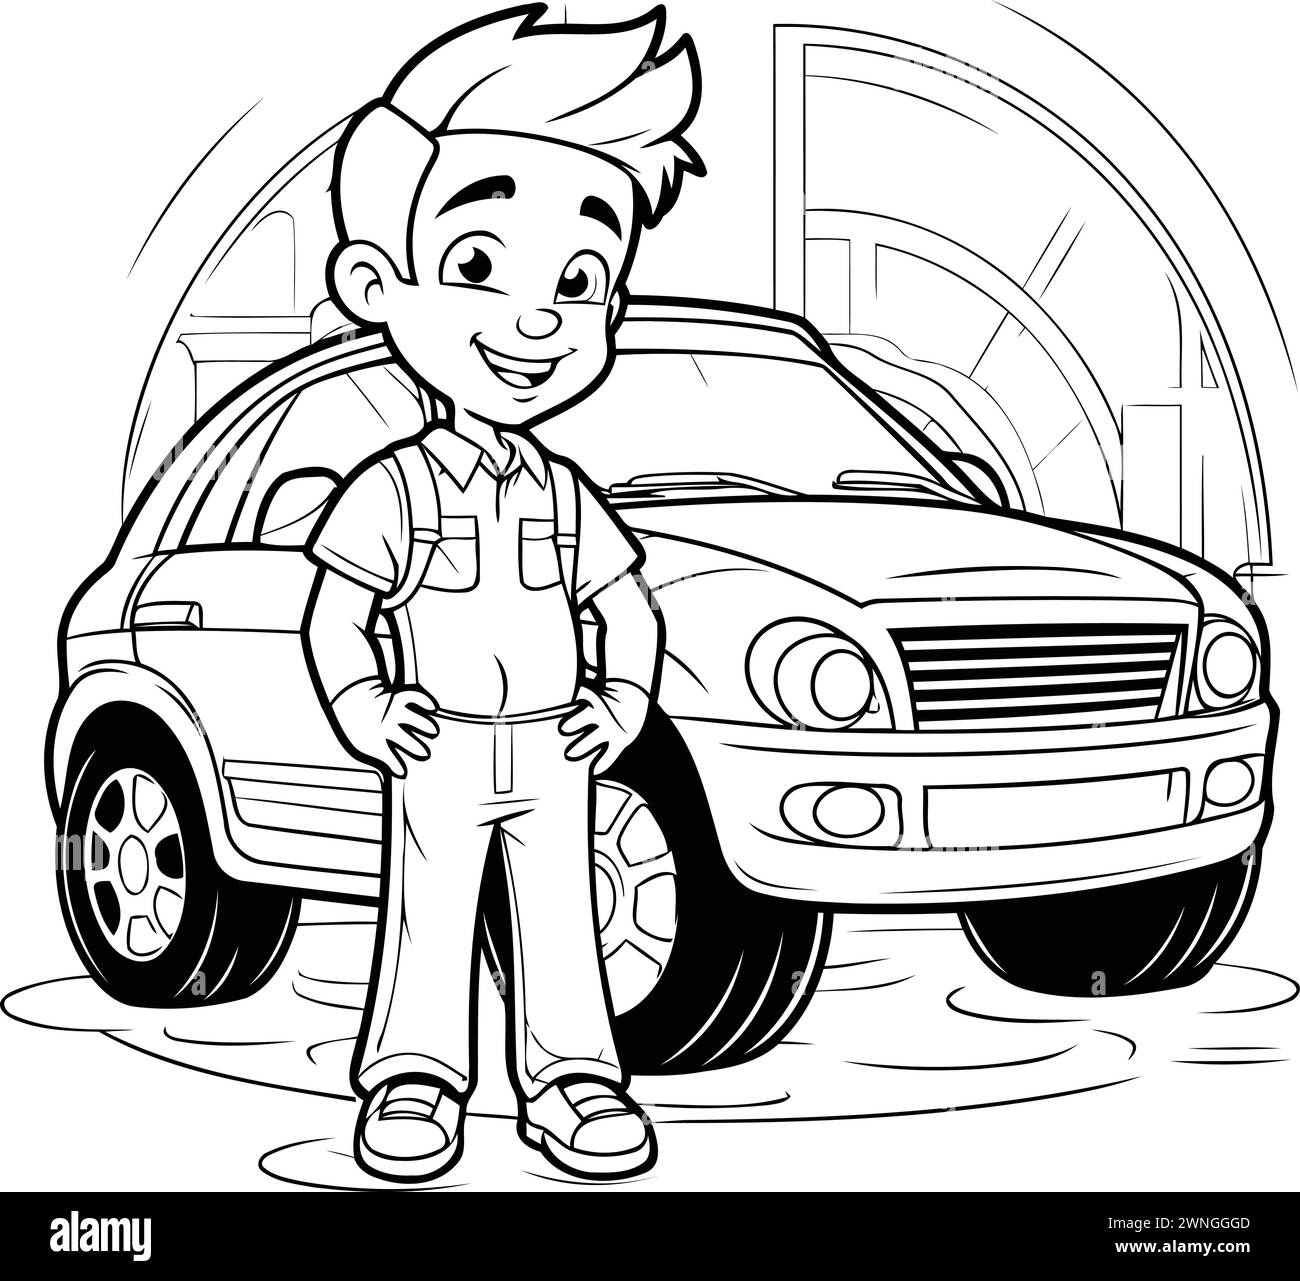 Schwarz-weiß-Cartoon-Illustration eines Teenagers, der Arbeitskleidung trägt und neben seinem Auto steht Stock Vektor